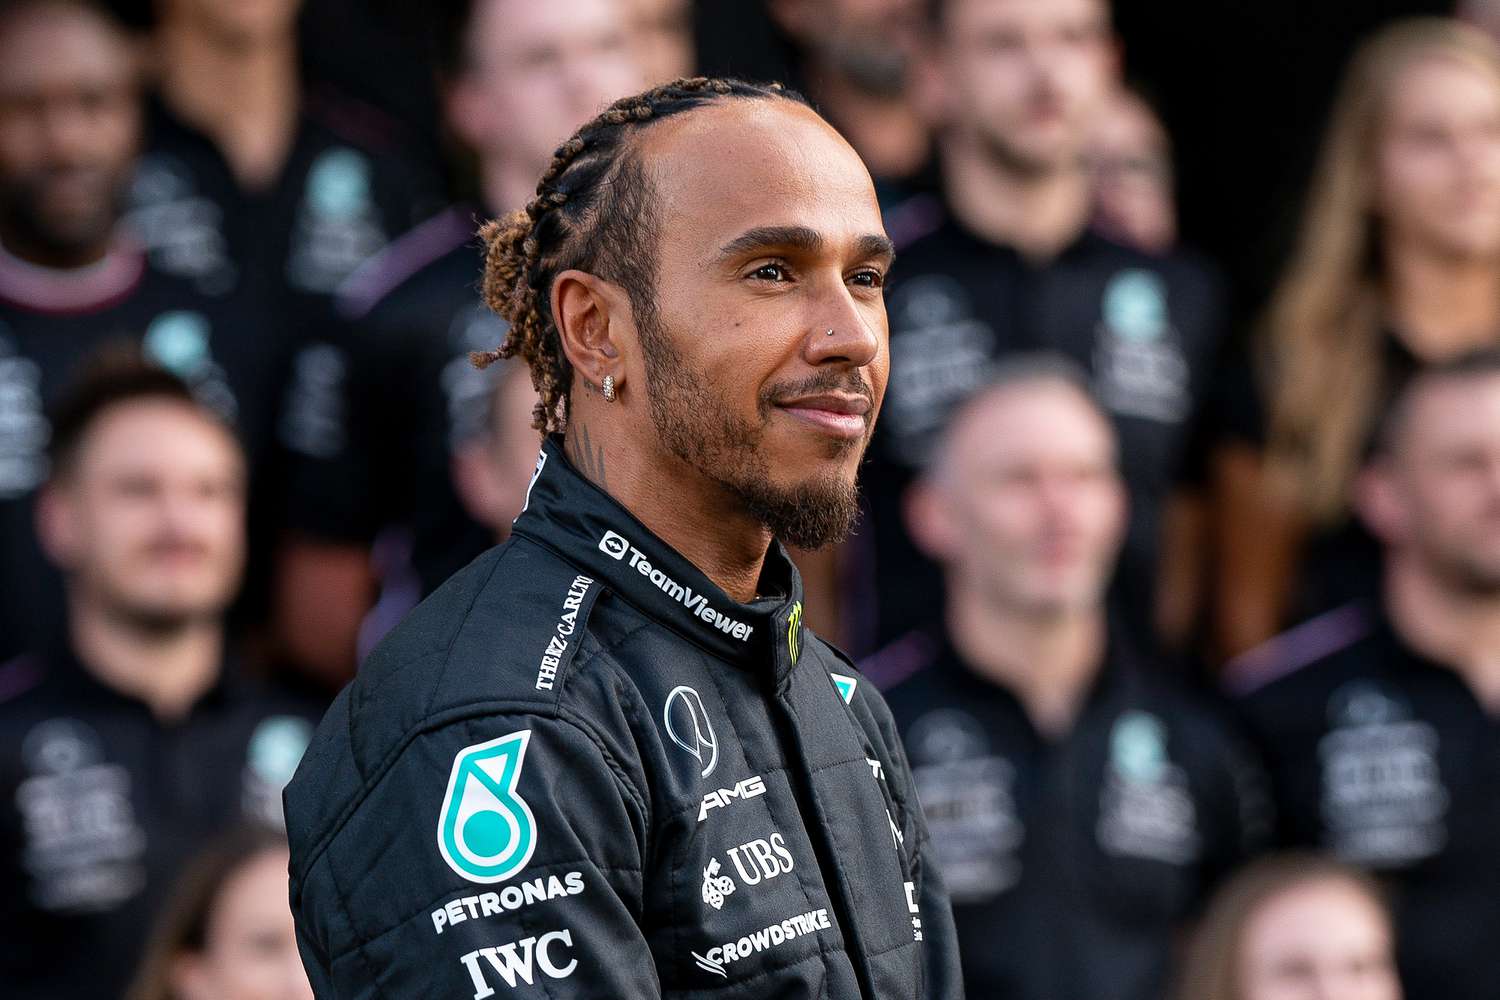 Mercedes Stresses Fair Driver Treatment Despite Hamilton's Reservations